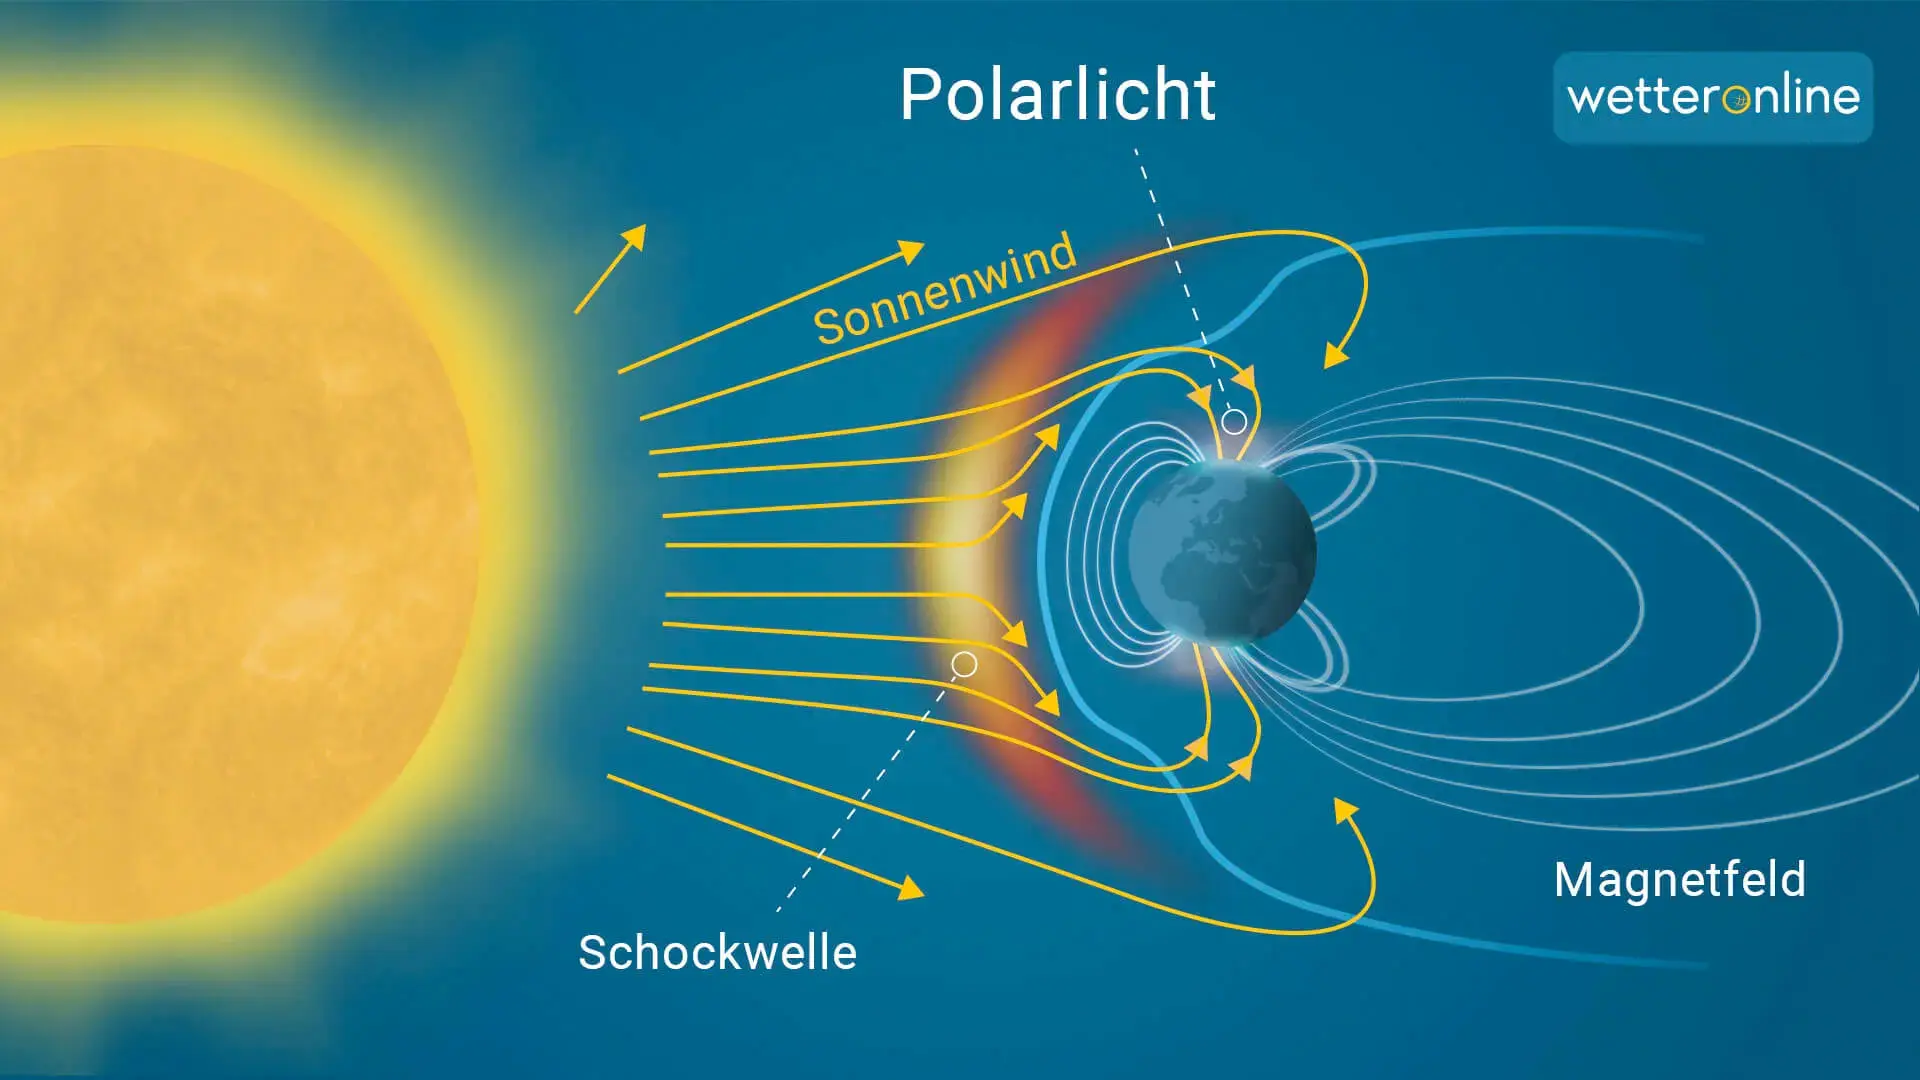 Von der Sonne ausgehend weht ständig ein Strom geladener Teilchen durch unser Sonnensystem. 